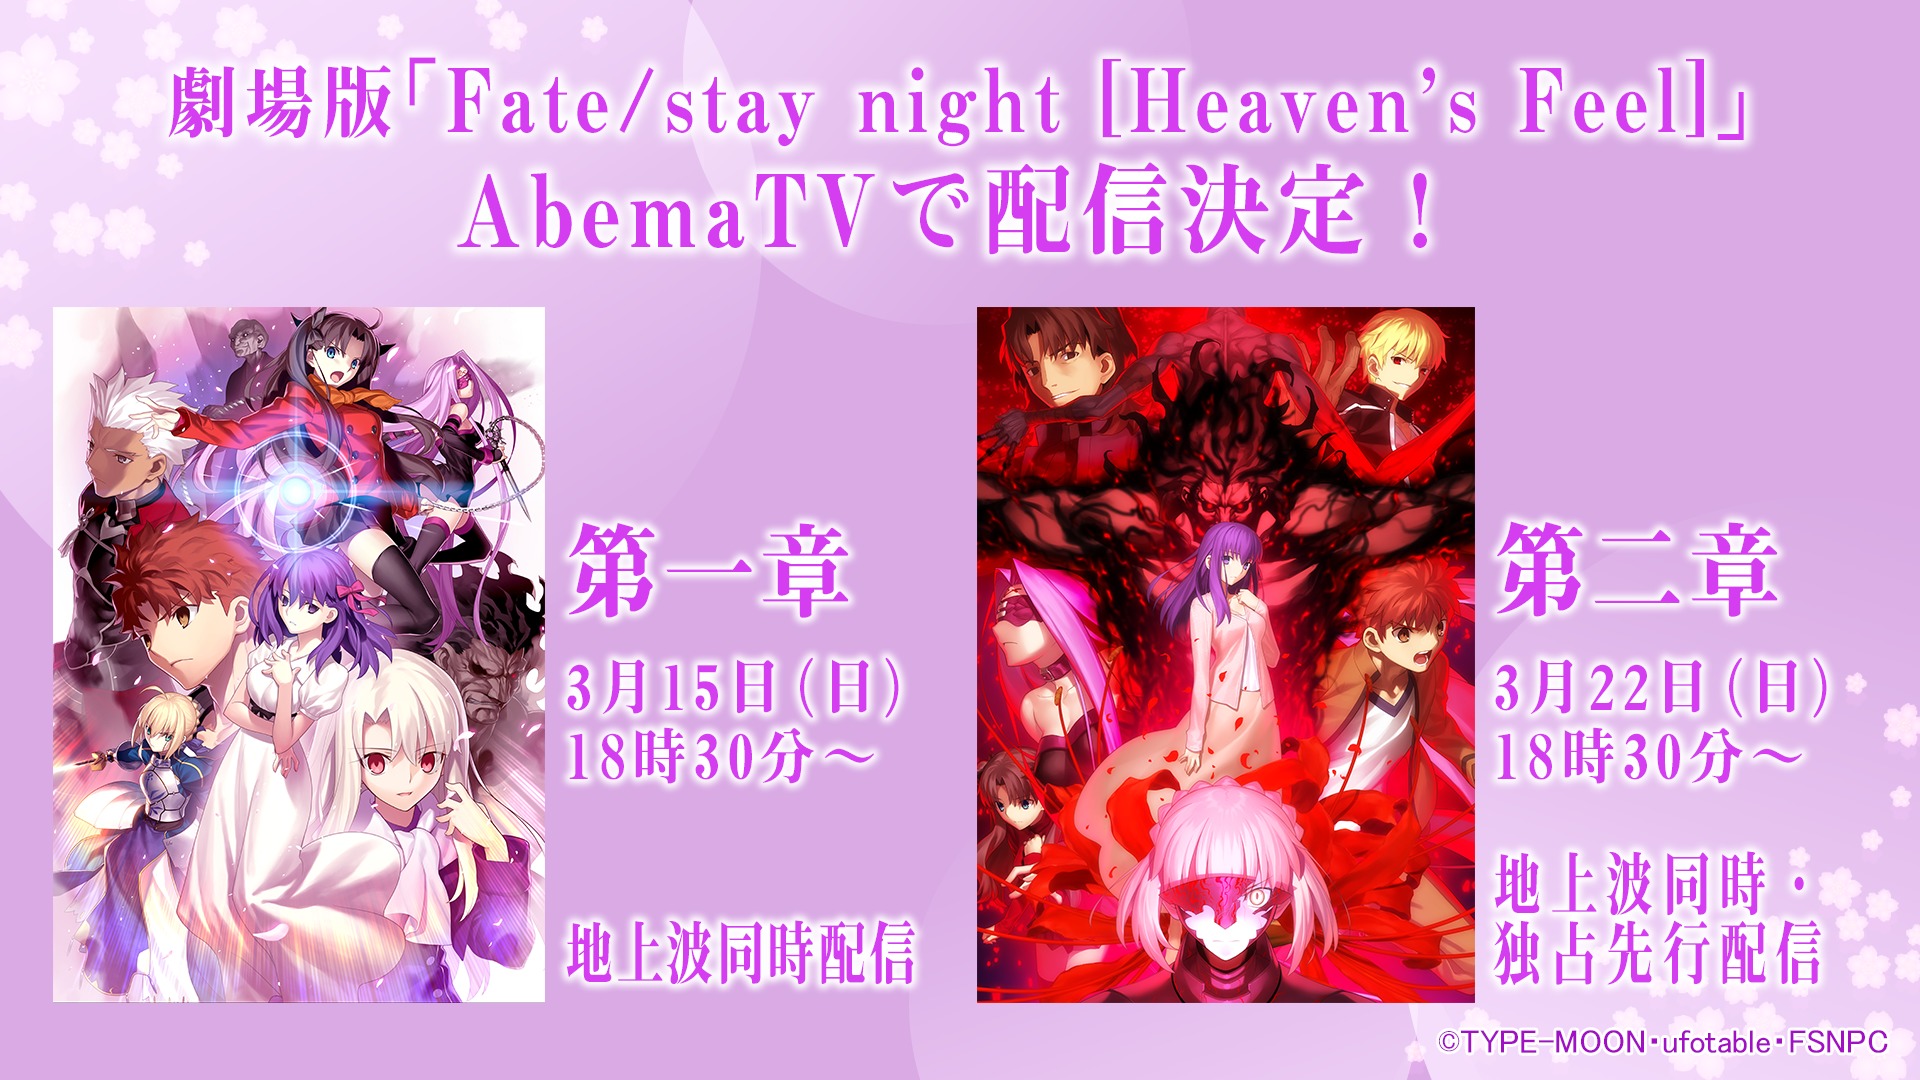 『劇場版「Fate/stay night [Heaven's Feel]」』